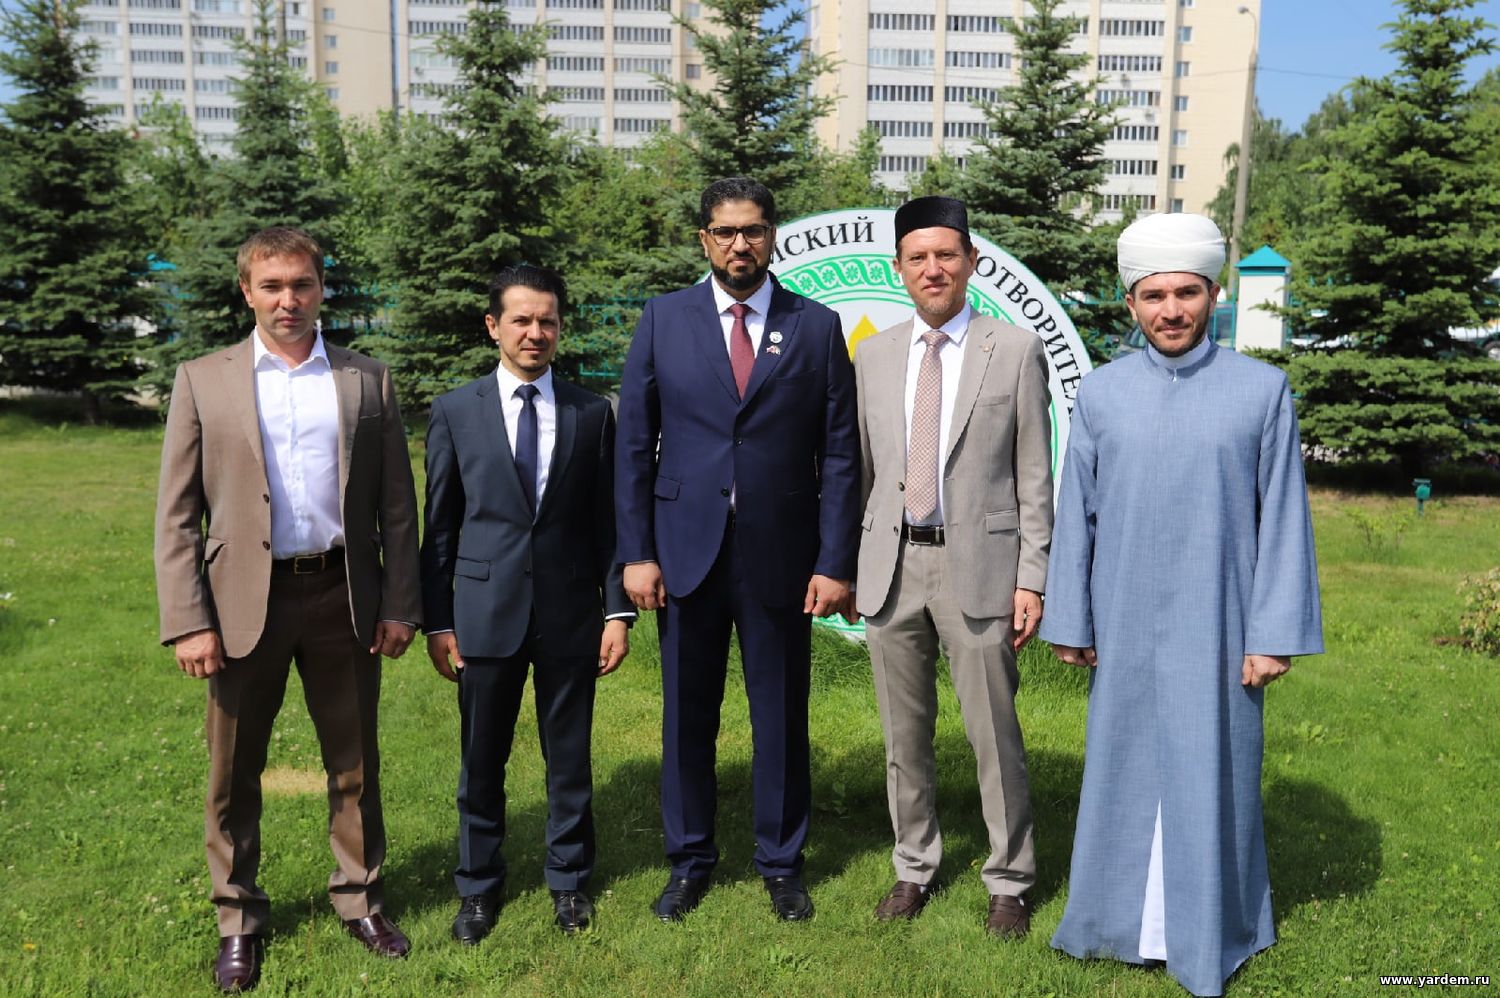 Фонд «Ярдэм» посетил Чрезвычайный и полномочный посол Объединенных Арабских Эмиратов в Российской Федерации. Общие новости